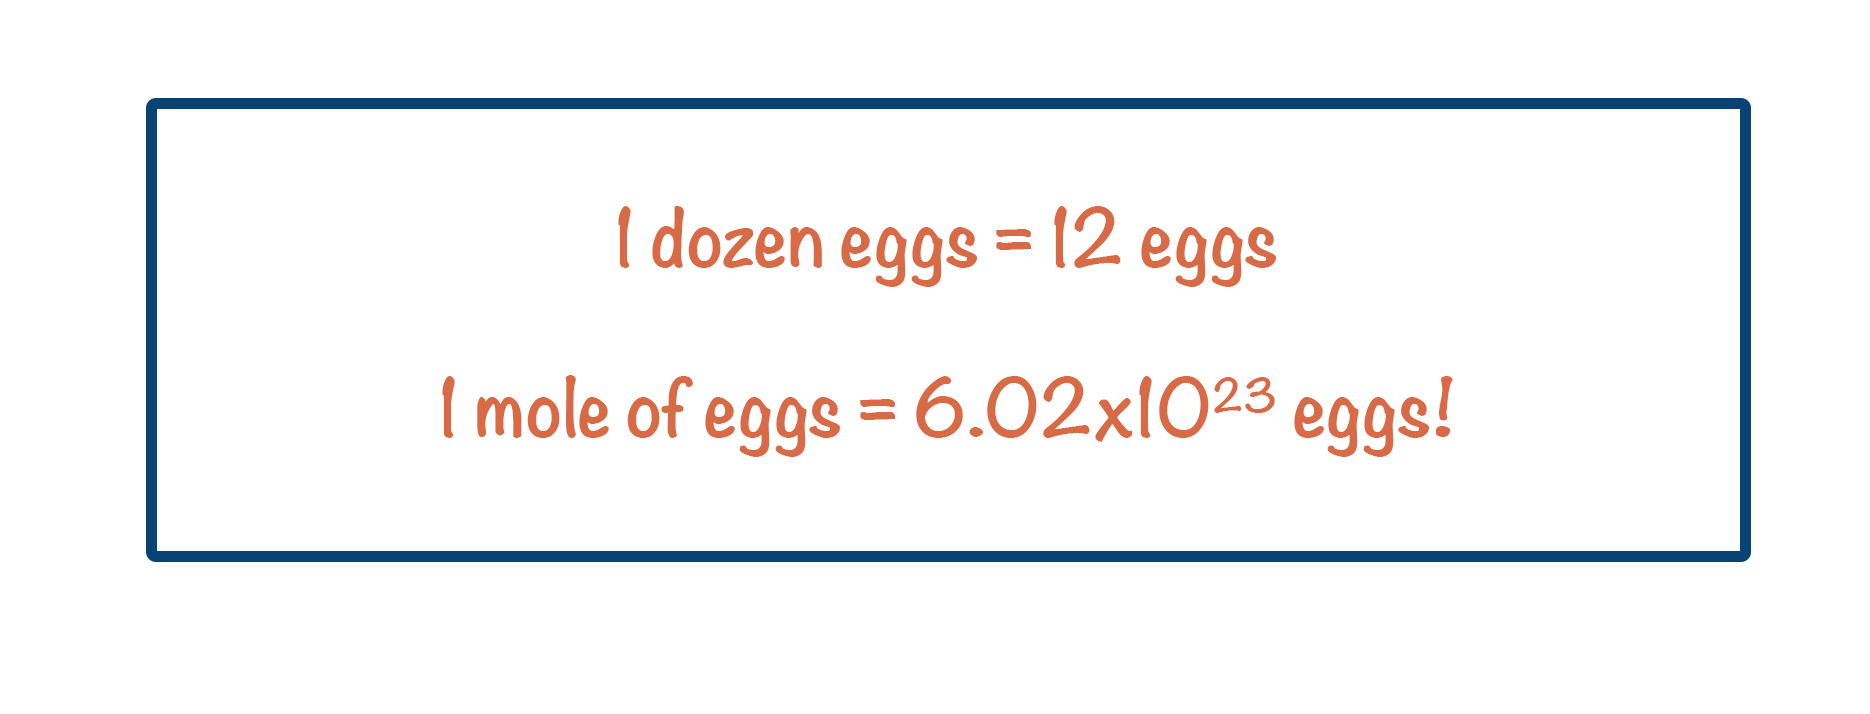 A-level Chemistry the mole dozen eggs